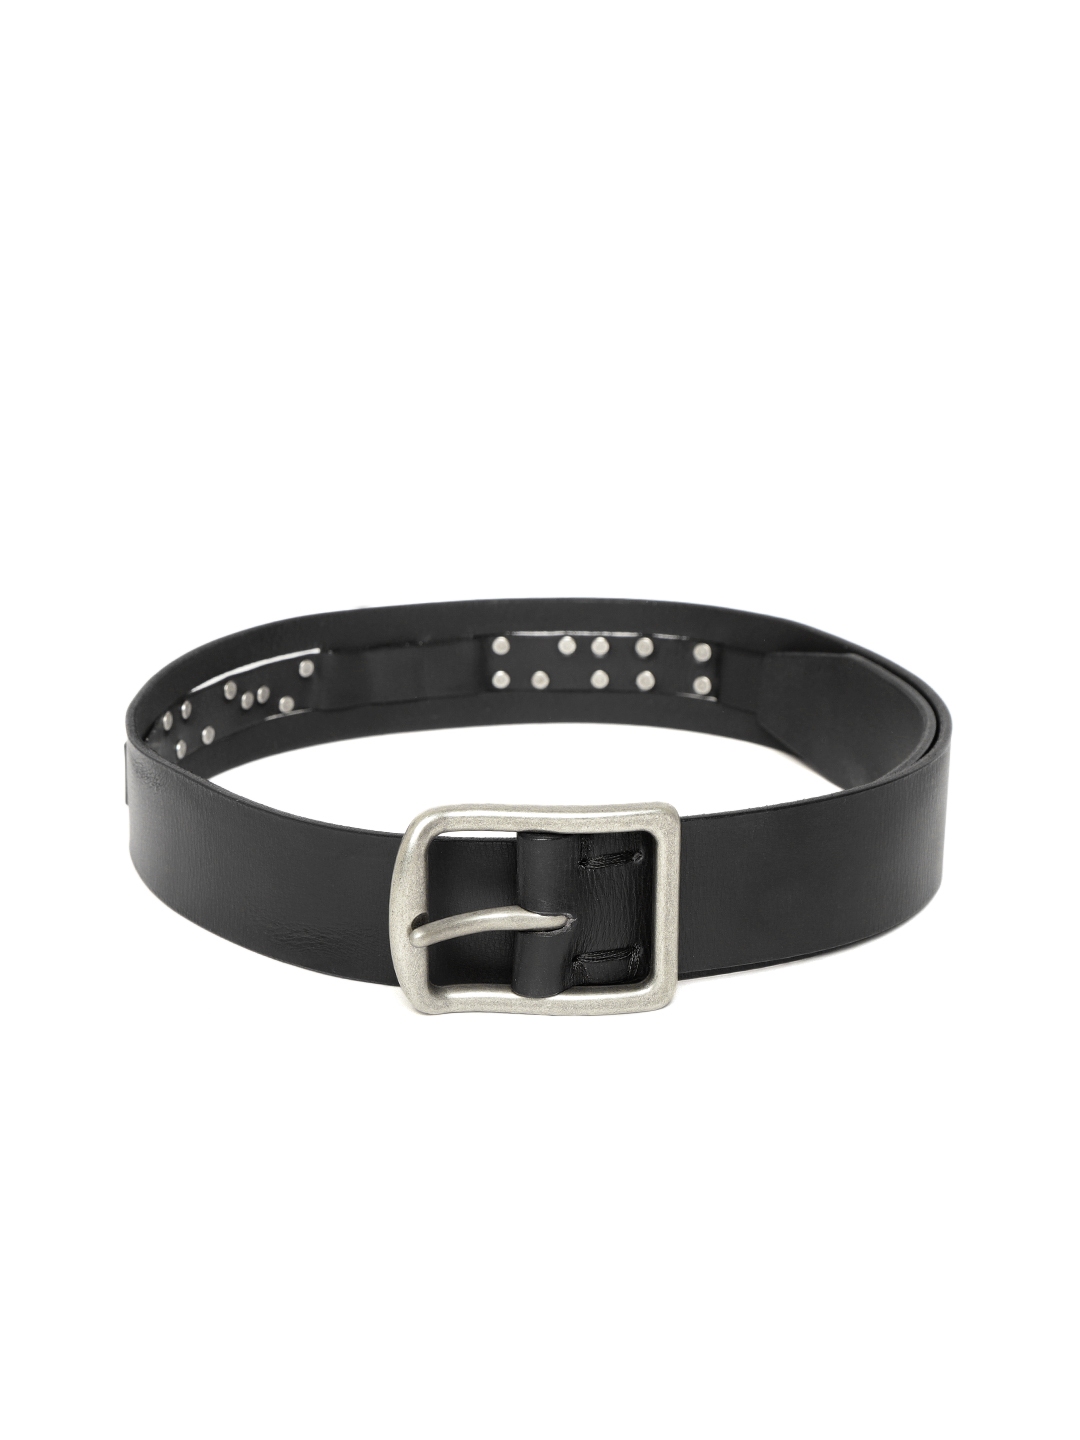 Buy Being Human Men Black Leather Solid Belt - Belts for Men 7372643 ...